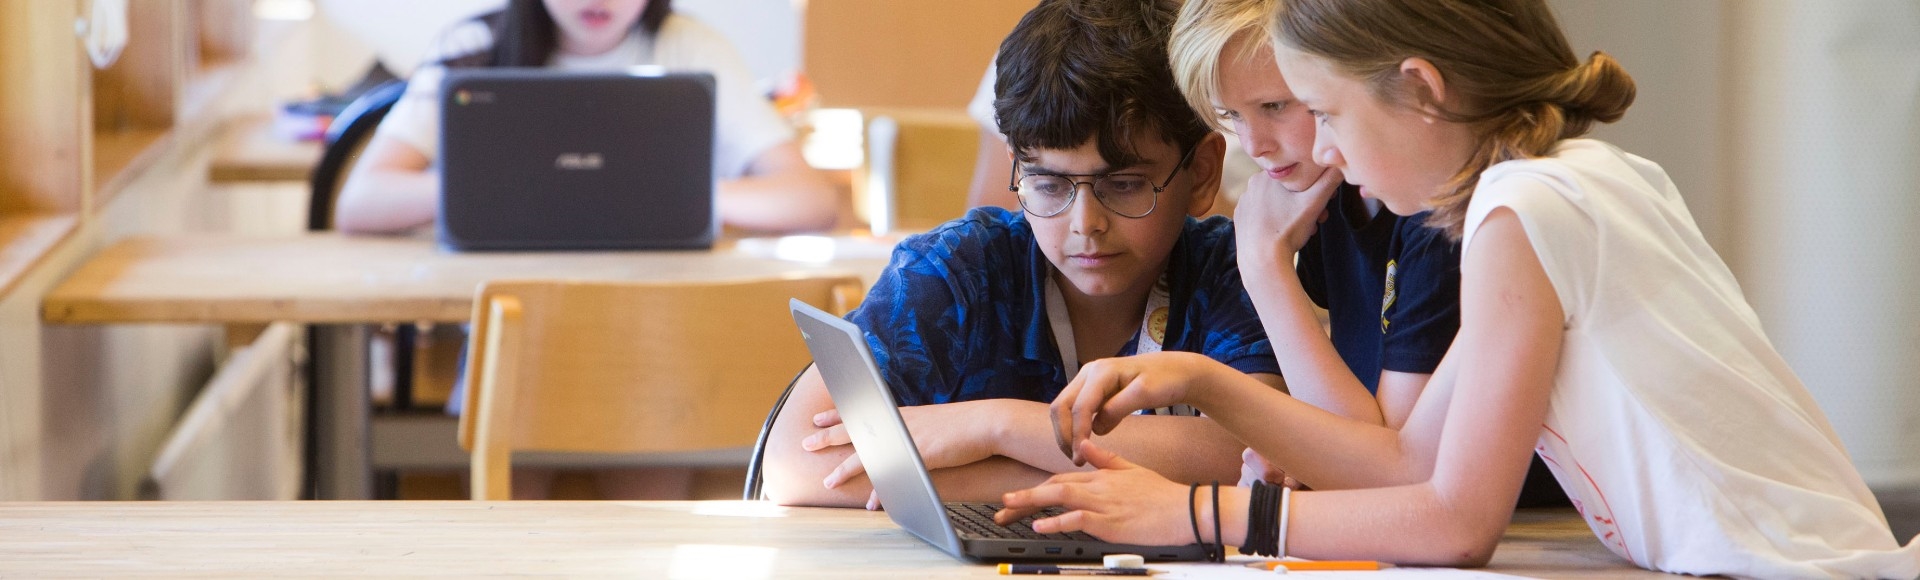 Tre elever jobbar tillsammans på en laptop